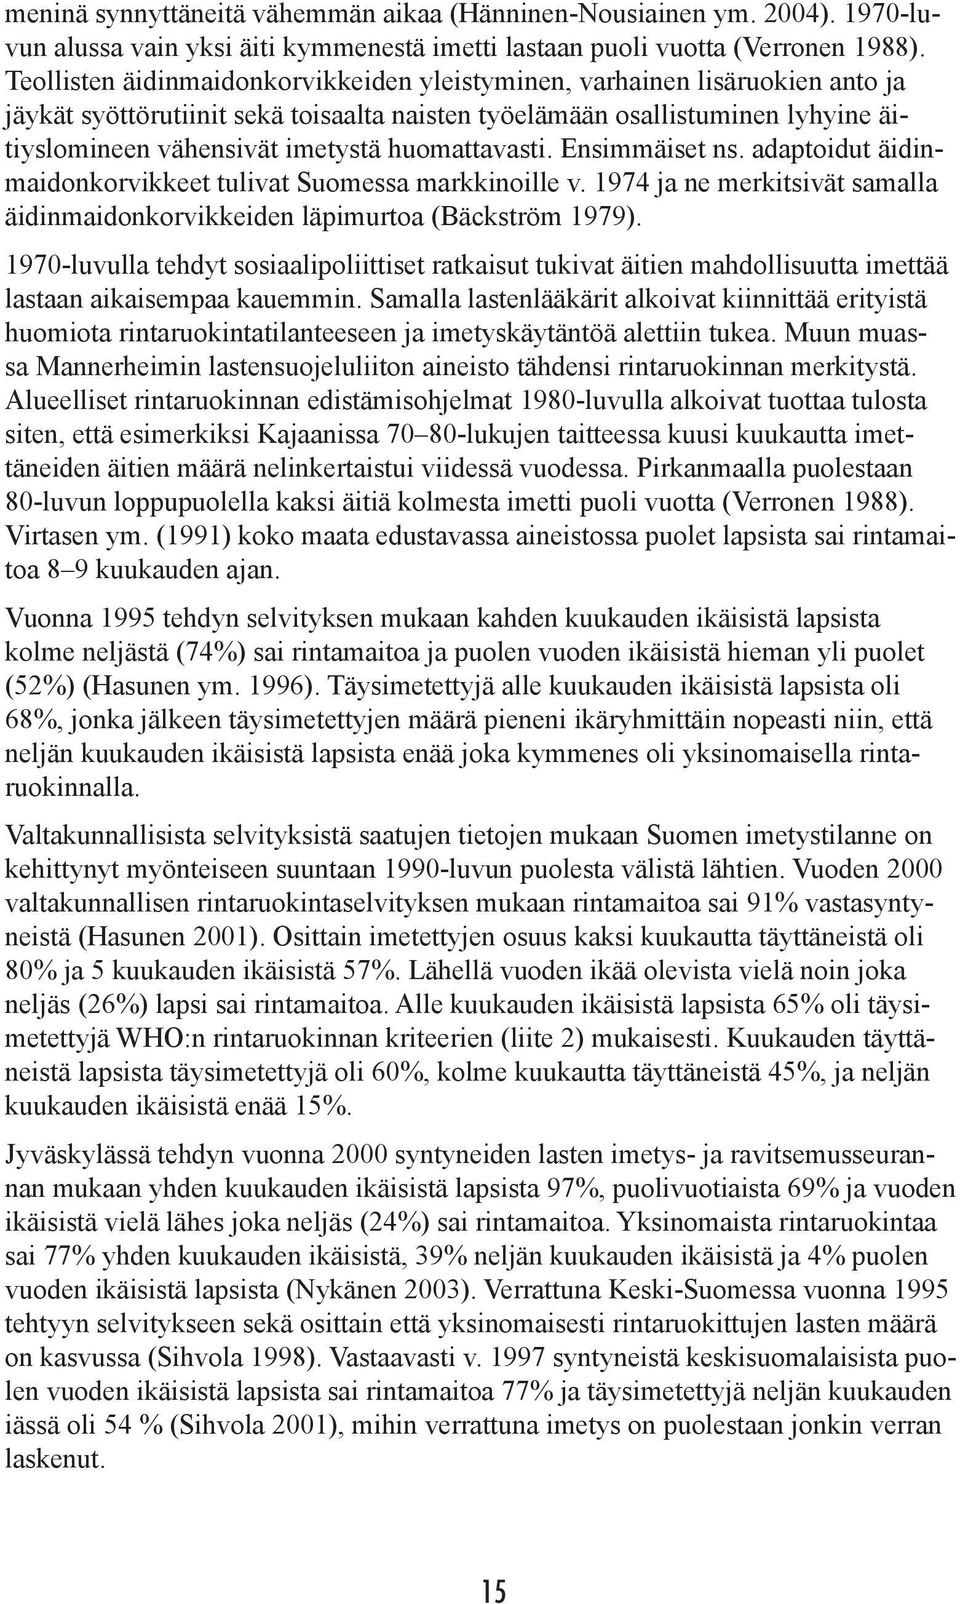 huomattavasti. Ensimmäiset ns. adaptoidut äidinmaidonkorvikkeet tulivat Suomessa markkinoille v. 1974 ja ne merkitsivät samalla äidinmaidonkorvikkeiden läpimurtoa (Bäckström 1979).